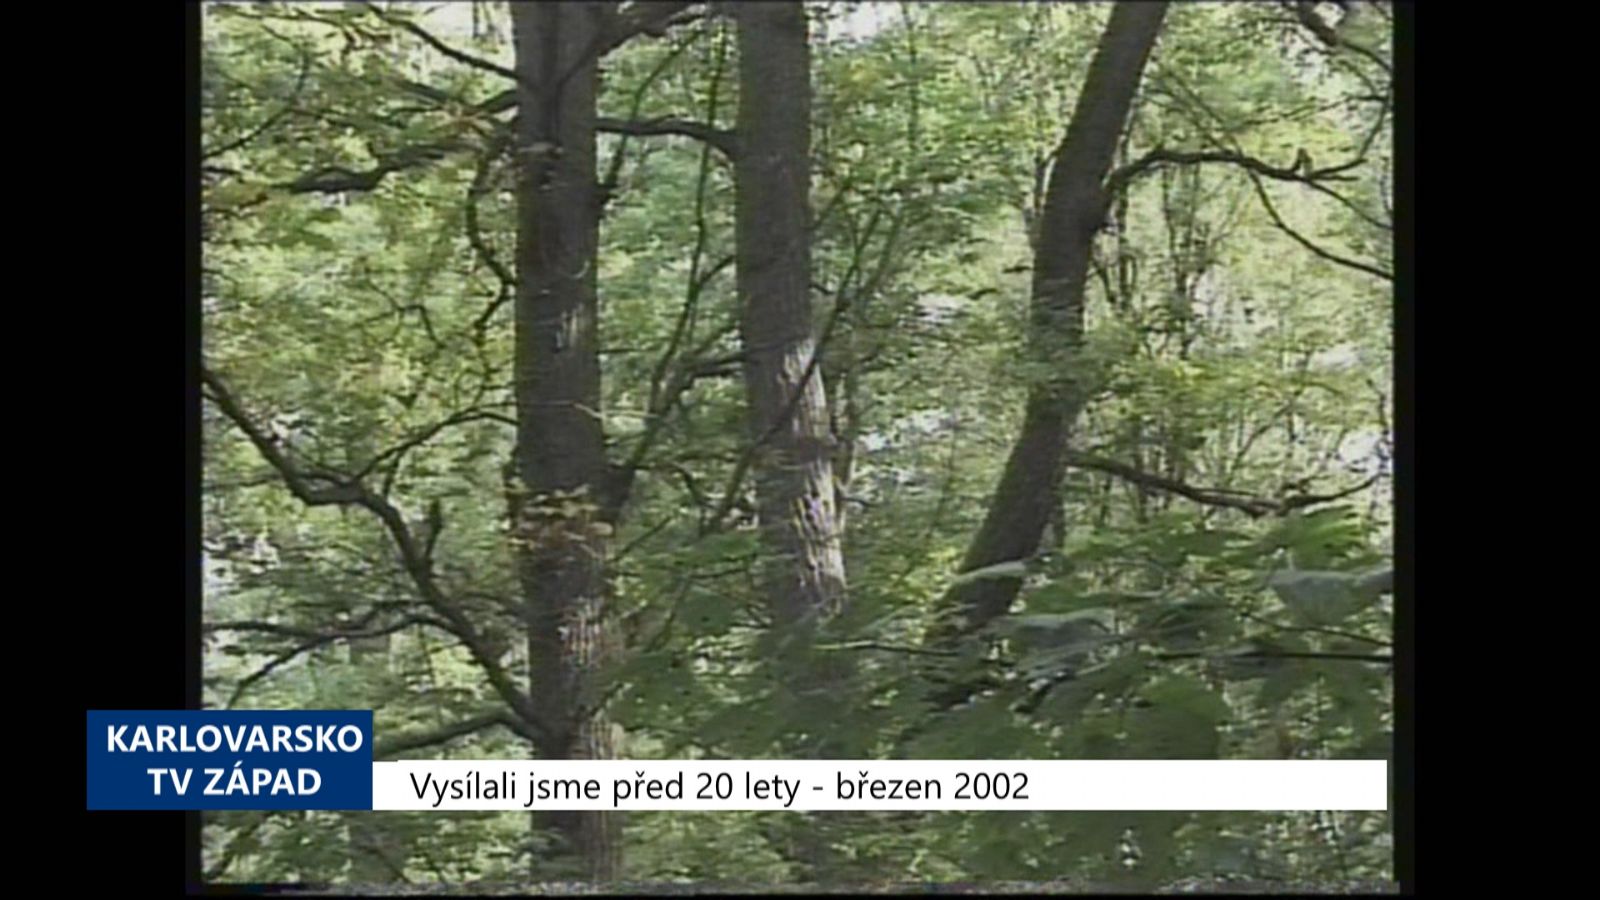 2002 – Cheb: Město chce sejmout zástavu bavorského lesa (TV Západ)